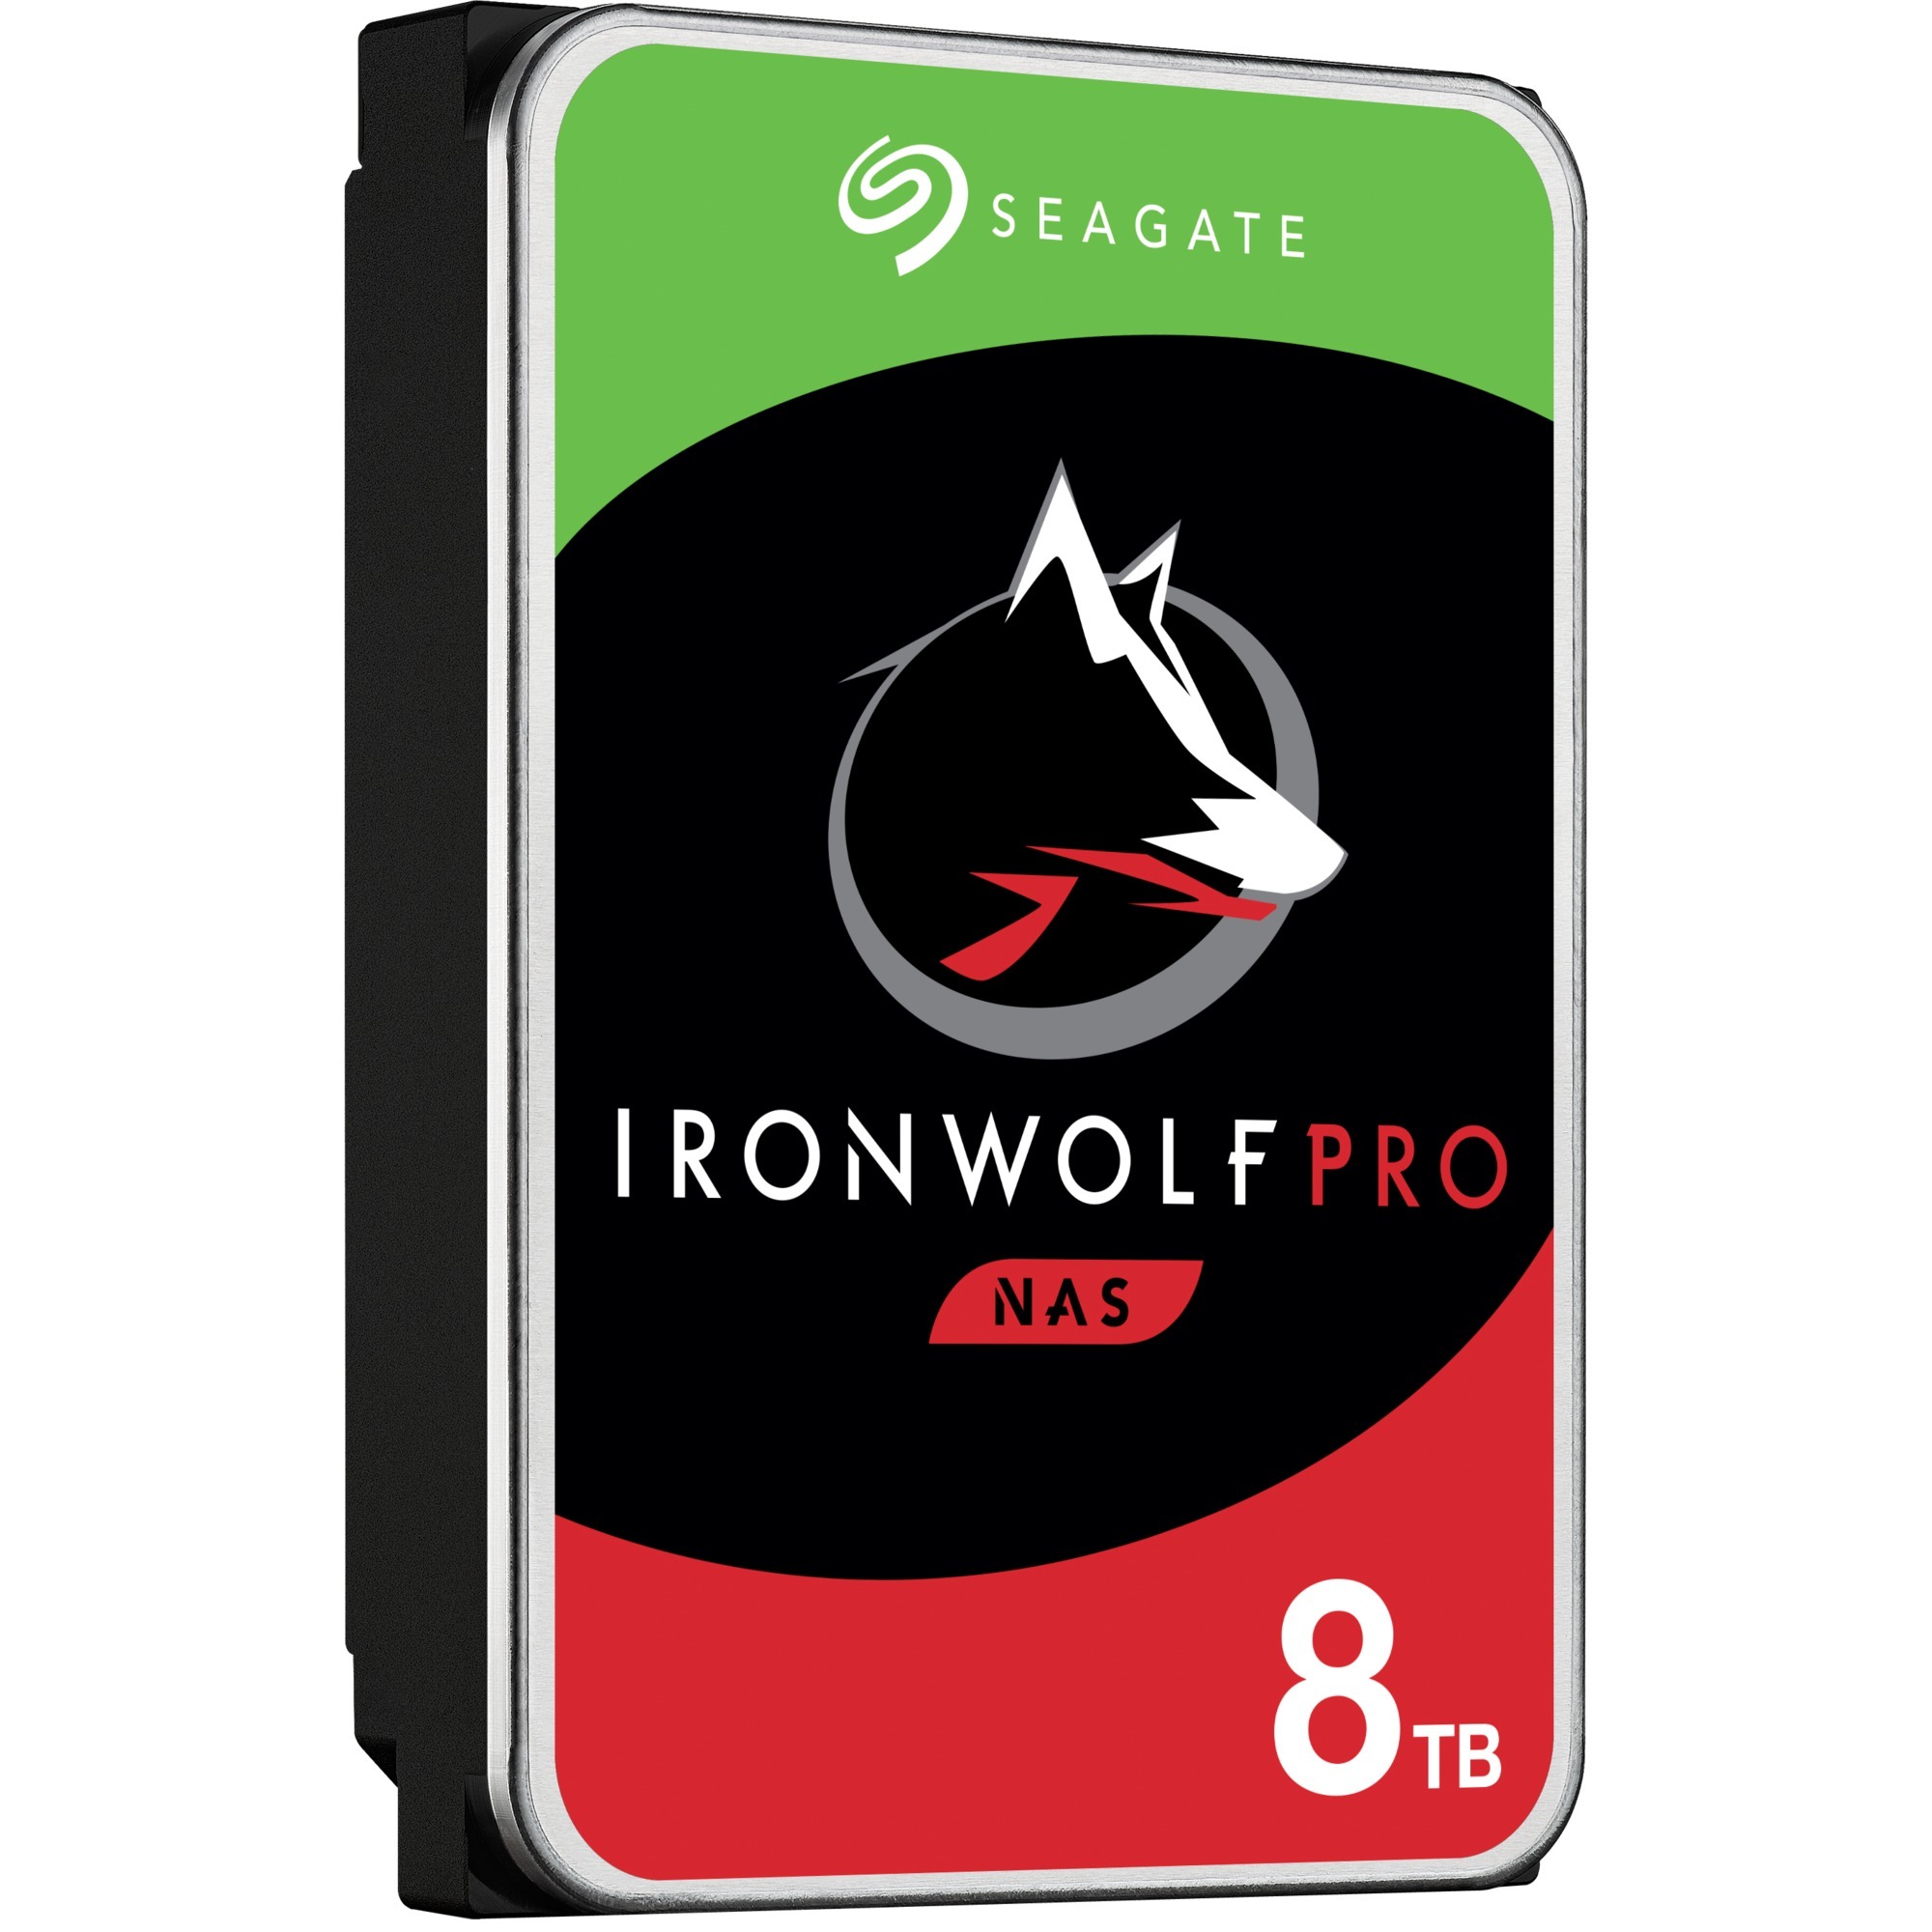 Image of Alternate - IronWolf Pro NAS 8 TB CMR, Festplatte online einkaufen bei Alternate